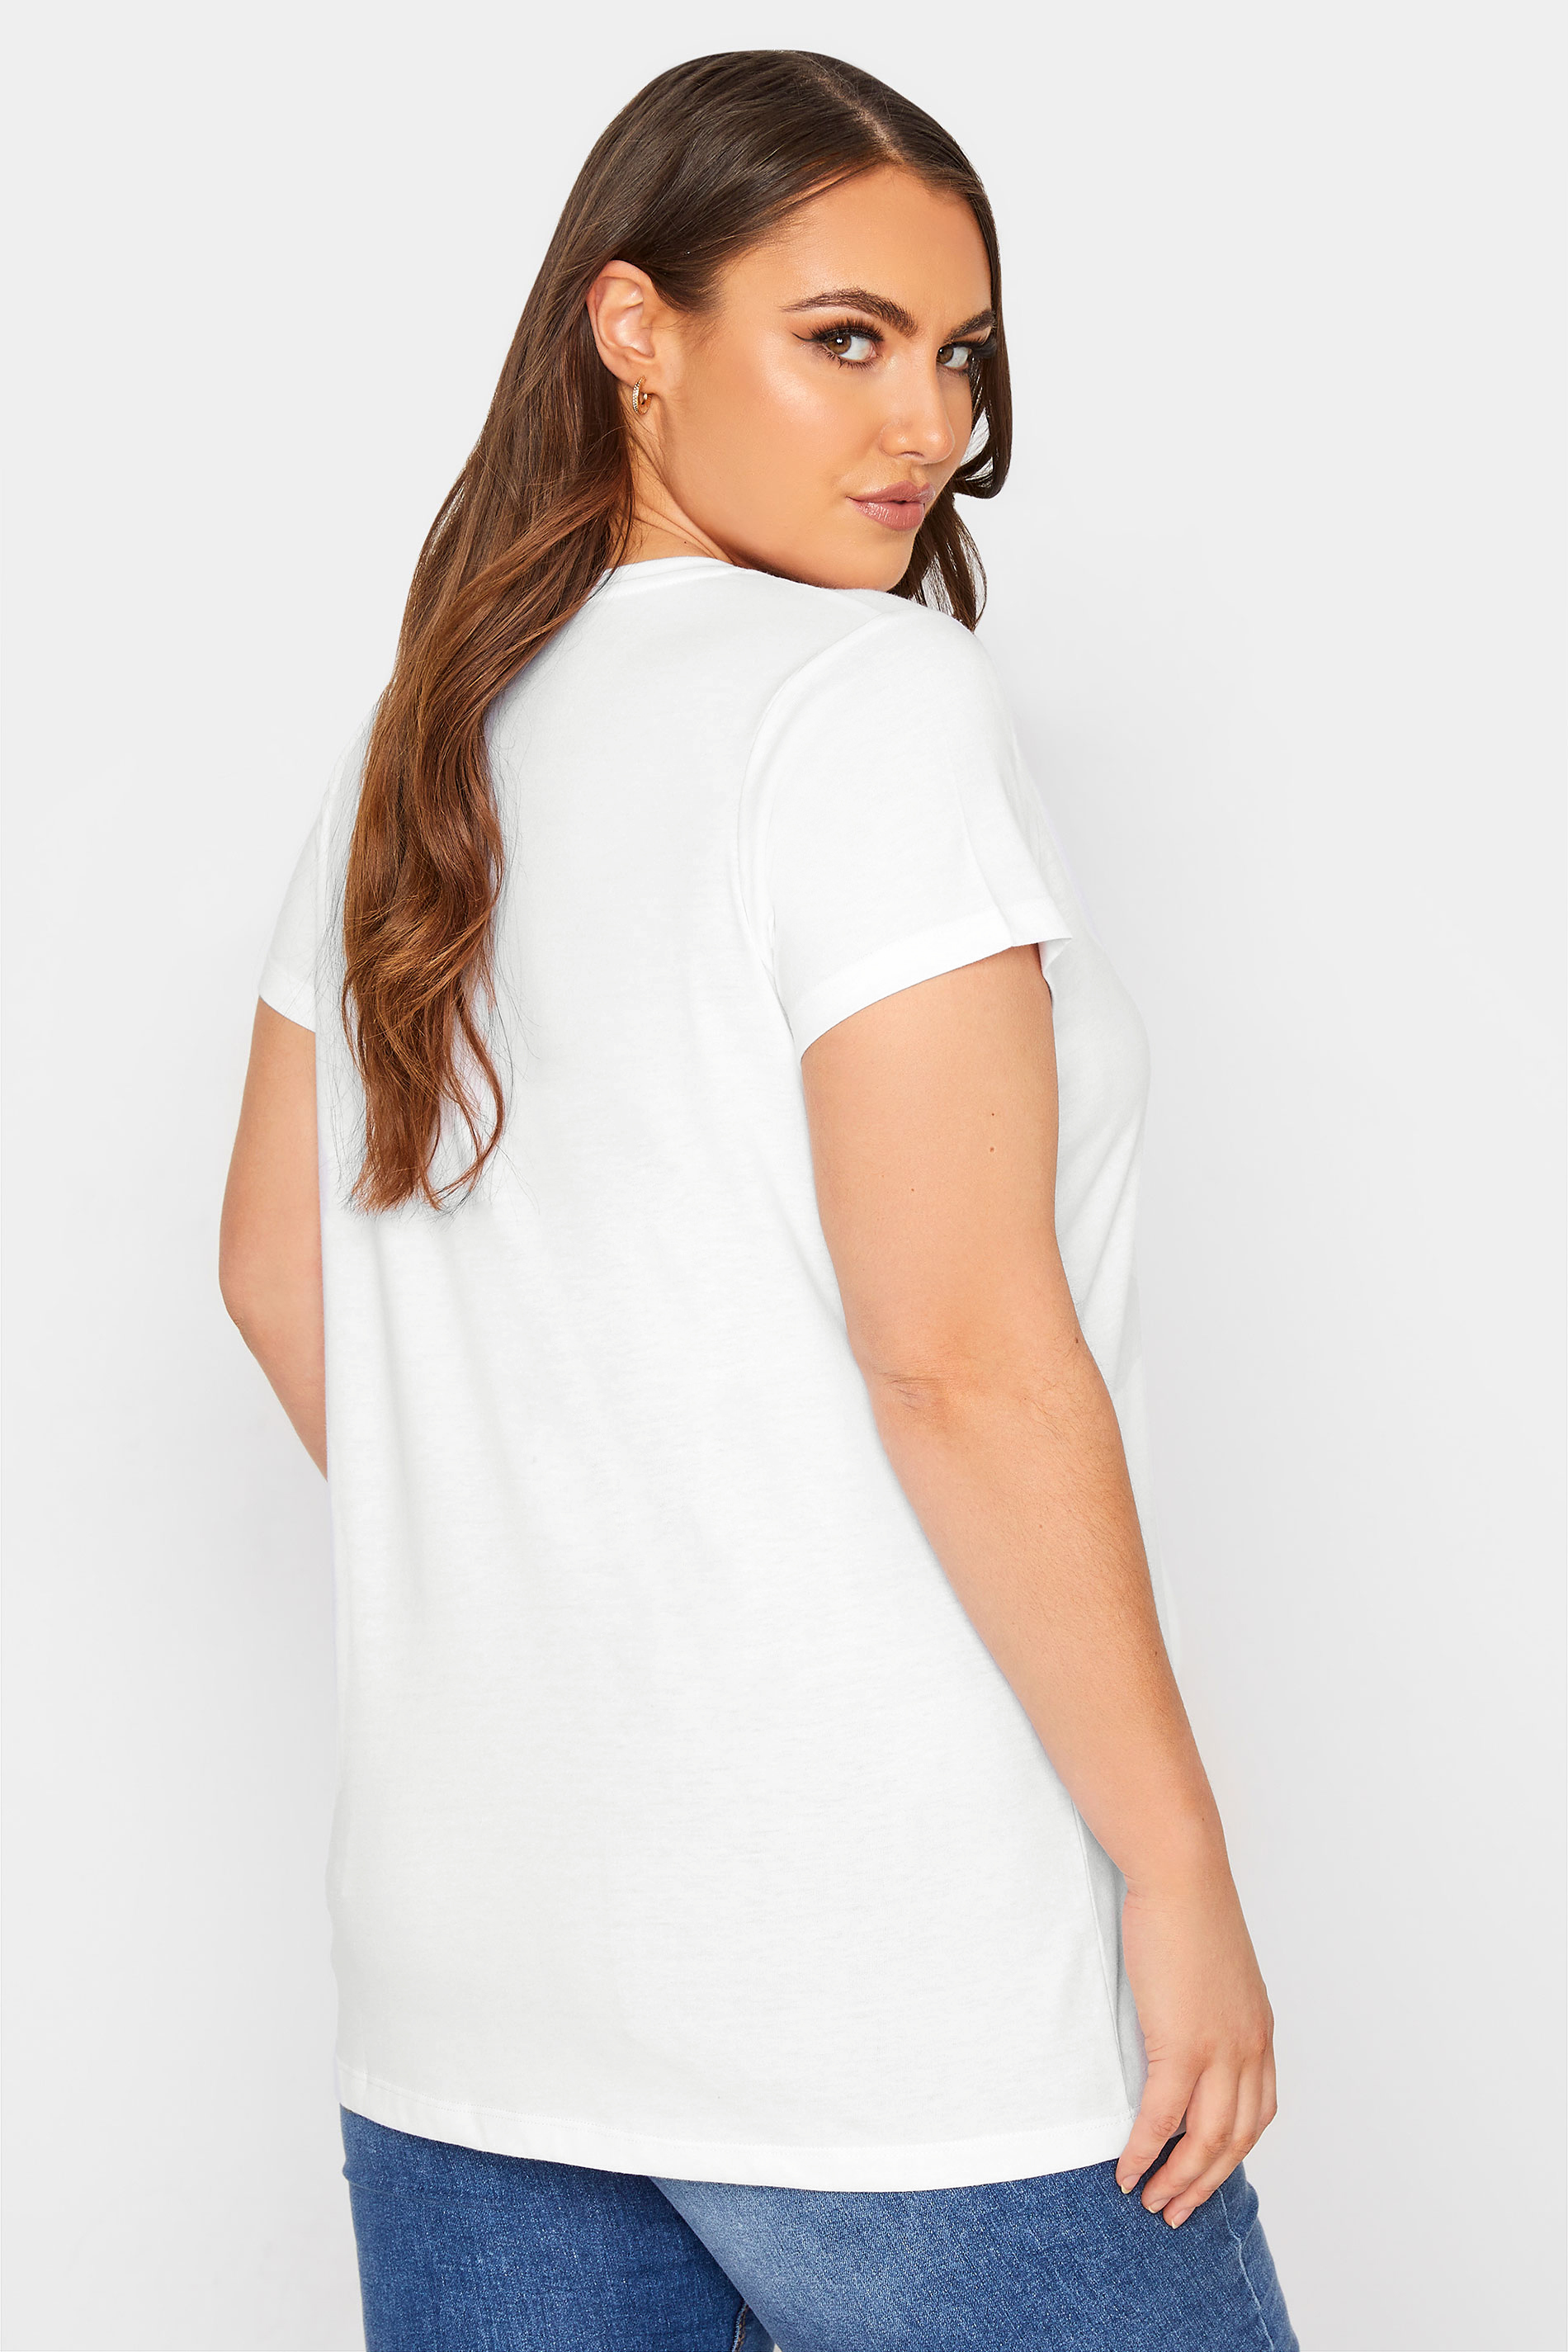 Grande taille  Tops Grande taille  T-Shirts Basiques & Débardeurs | T-Shirt Blanc Manches Courtes en Jersey - QF21145